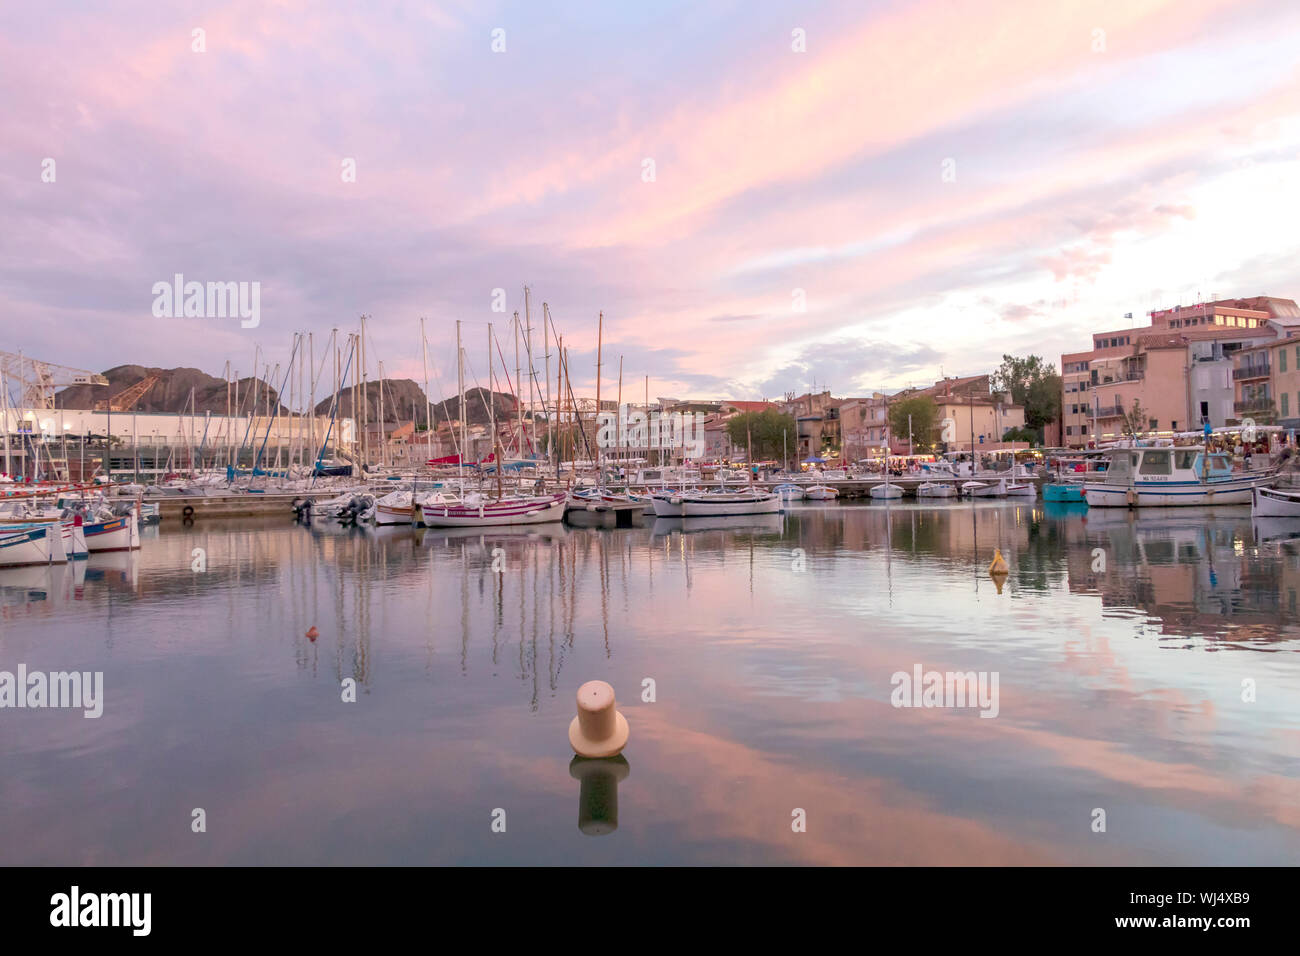 La Ciotat, Frankreich: Die Reihe der günstig chartern Yachtcharter in Alten Hafen der Marina der malerischen Stadt an der Mittelmeerküste bei pink Sonnenuntergang Abend Stockfoto